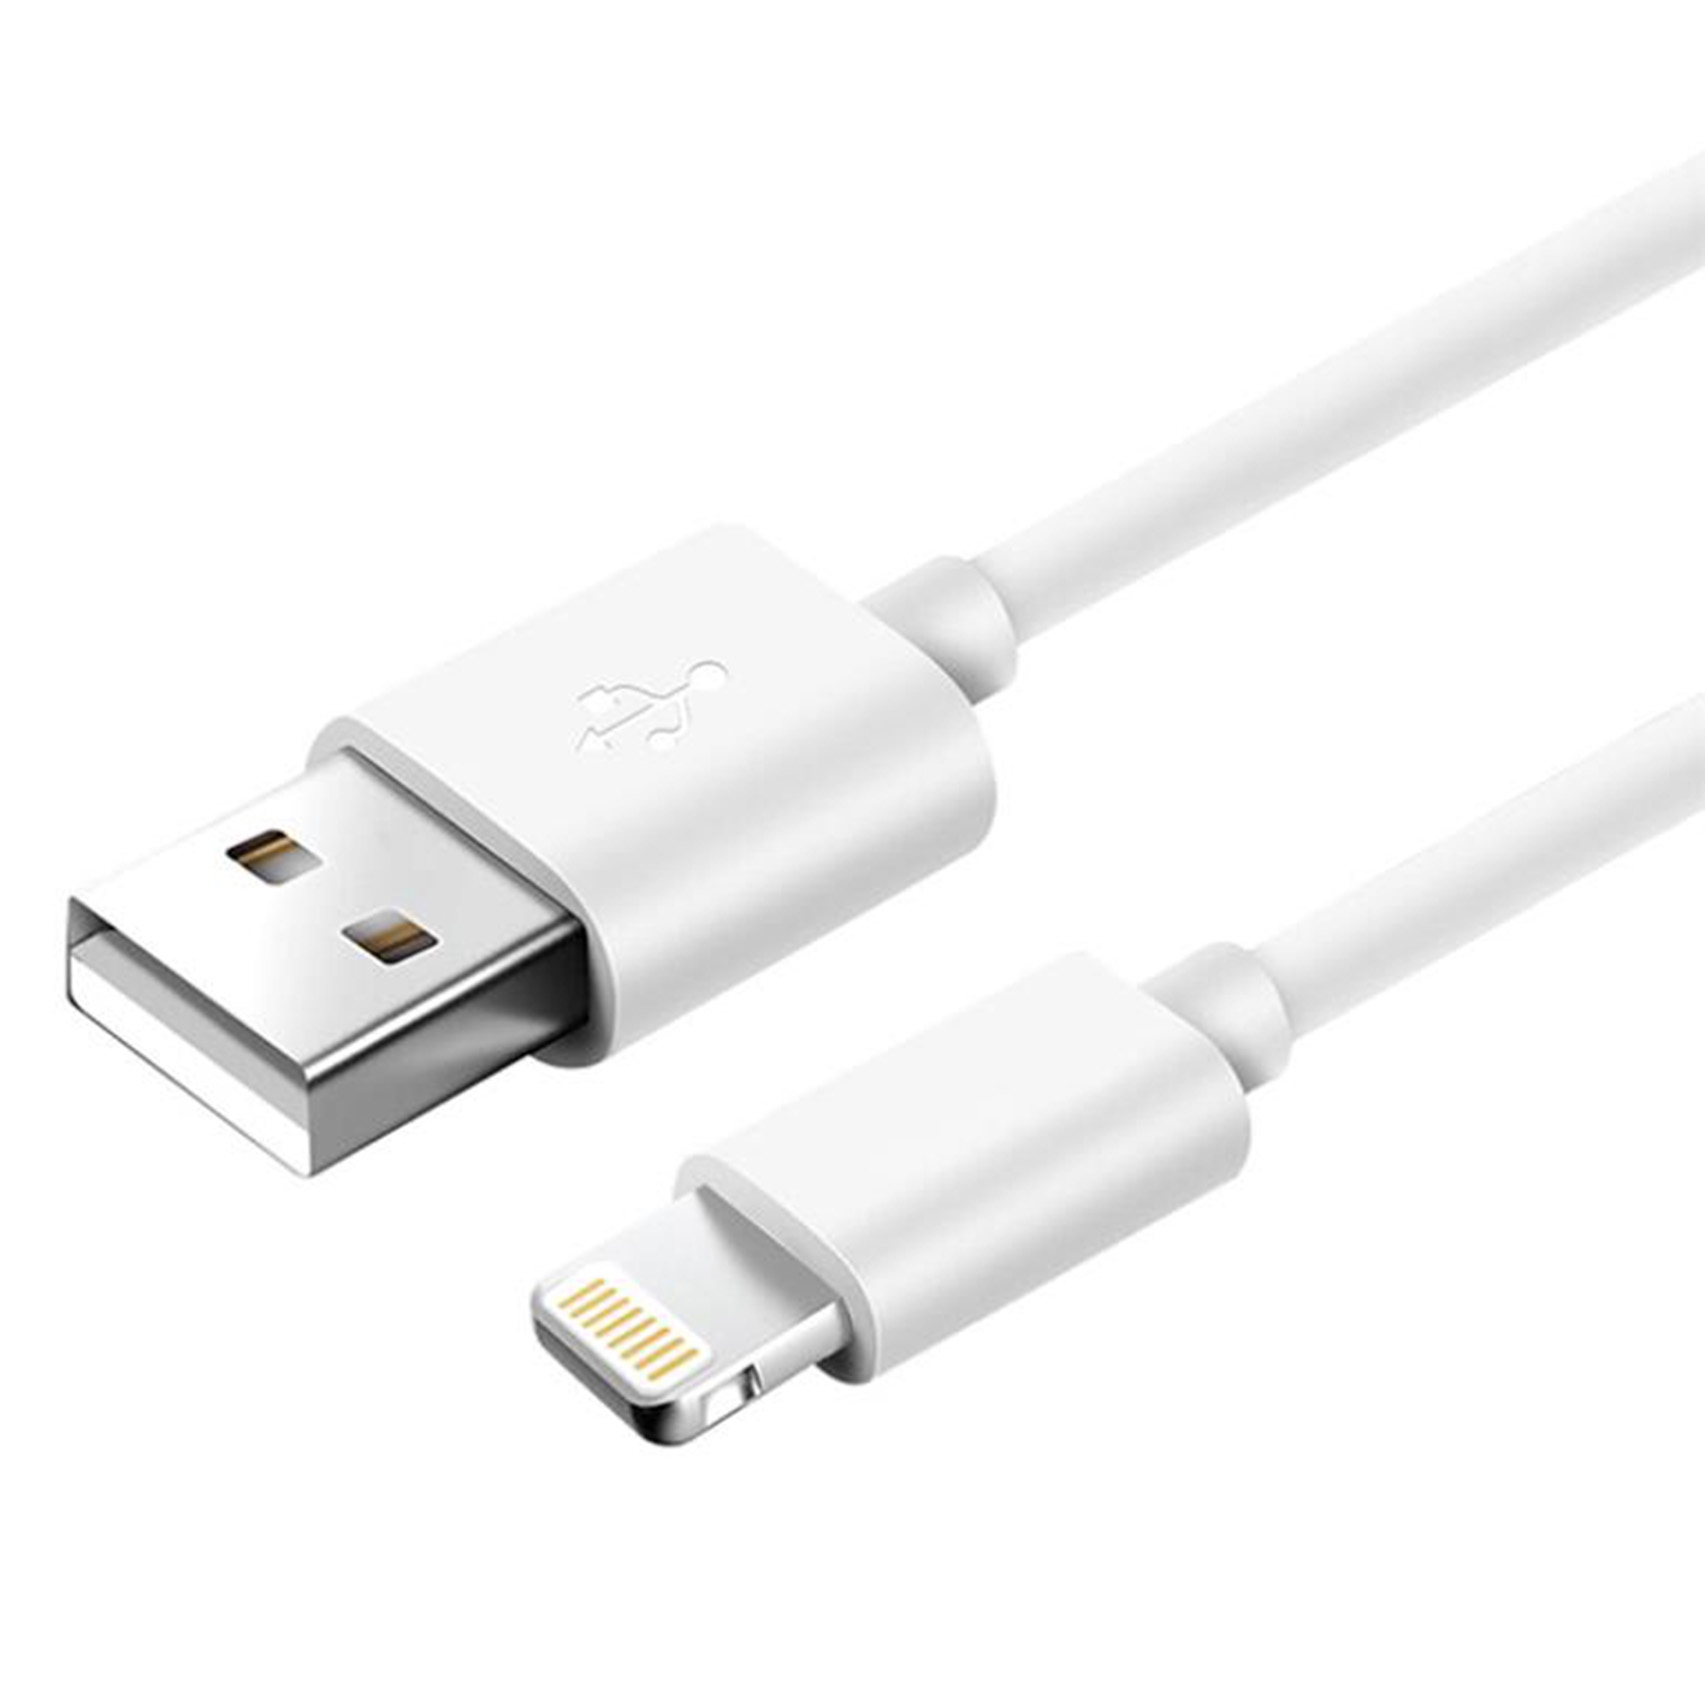 6x iPhone XS Max Lightning auf USB Kabel 1m Ladekabel